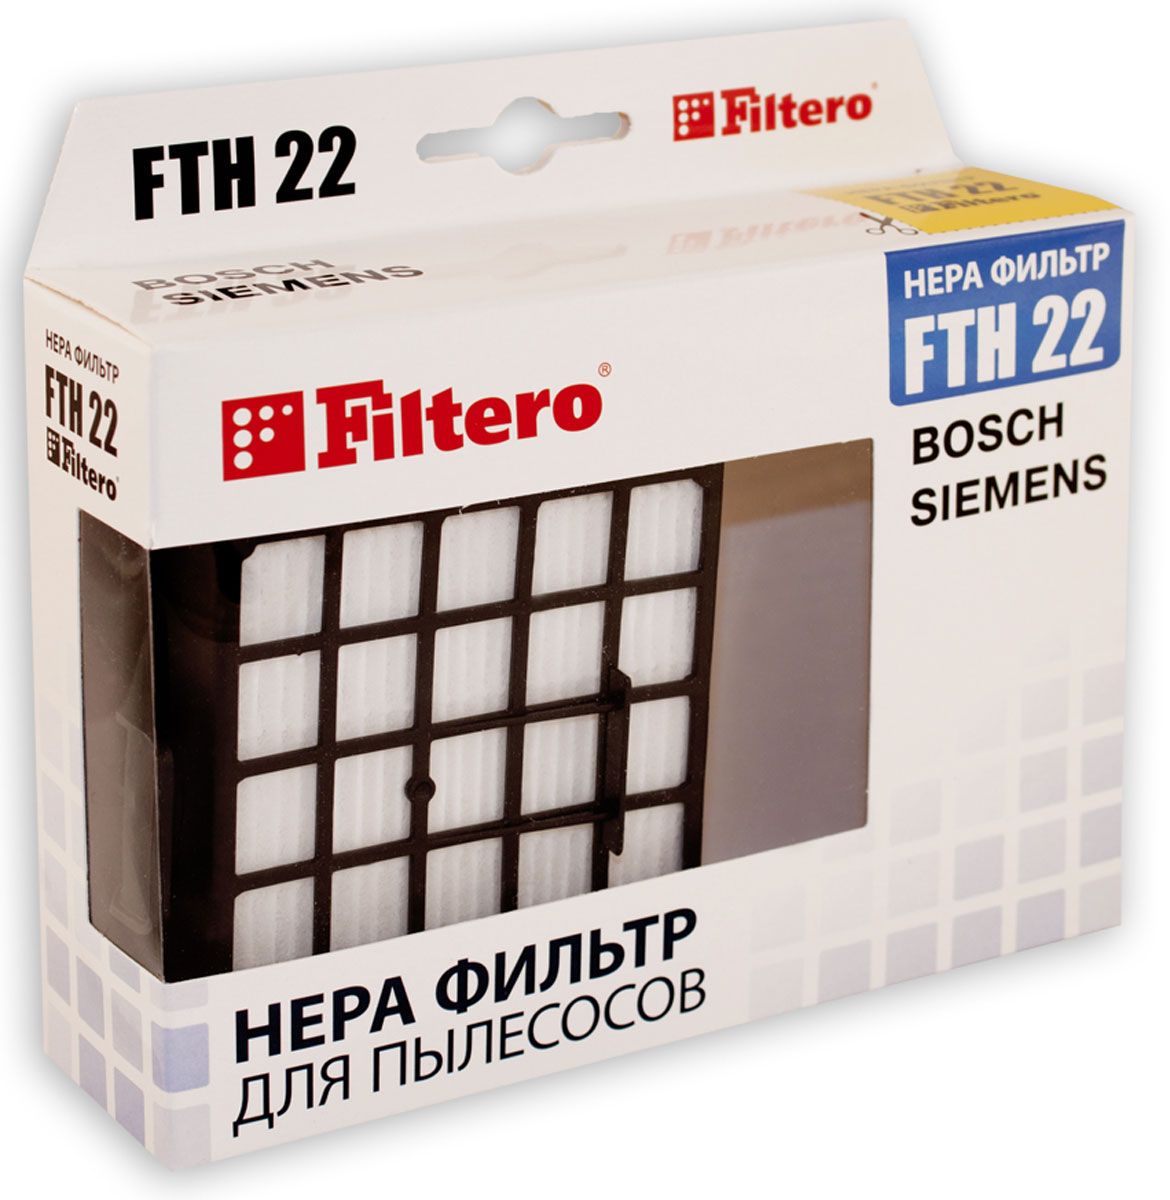 НЕРА-фильтр Filtero FTH 22 (1фильт.) нера фильтр topperr ftl31 1176 1фильт